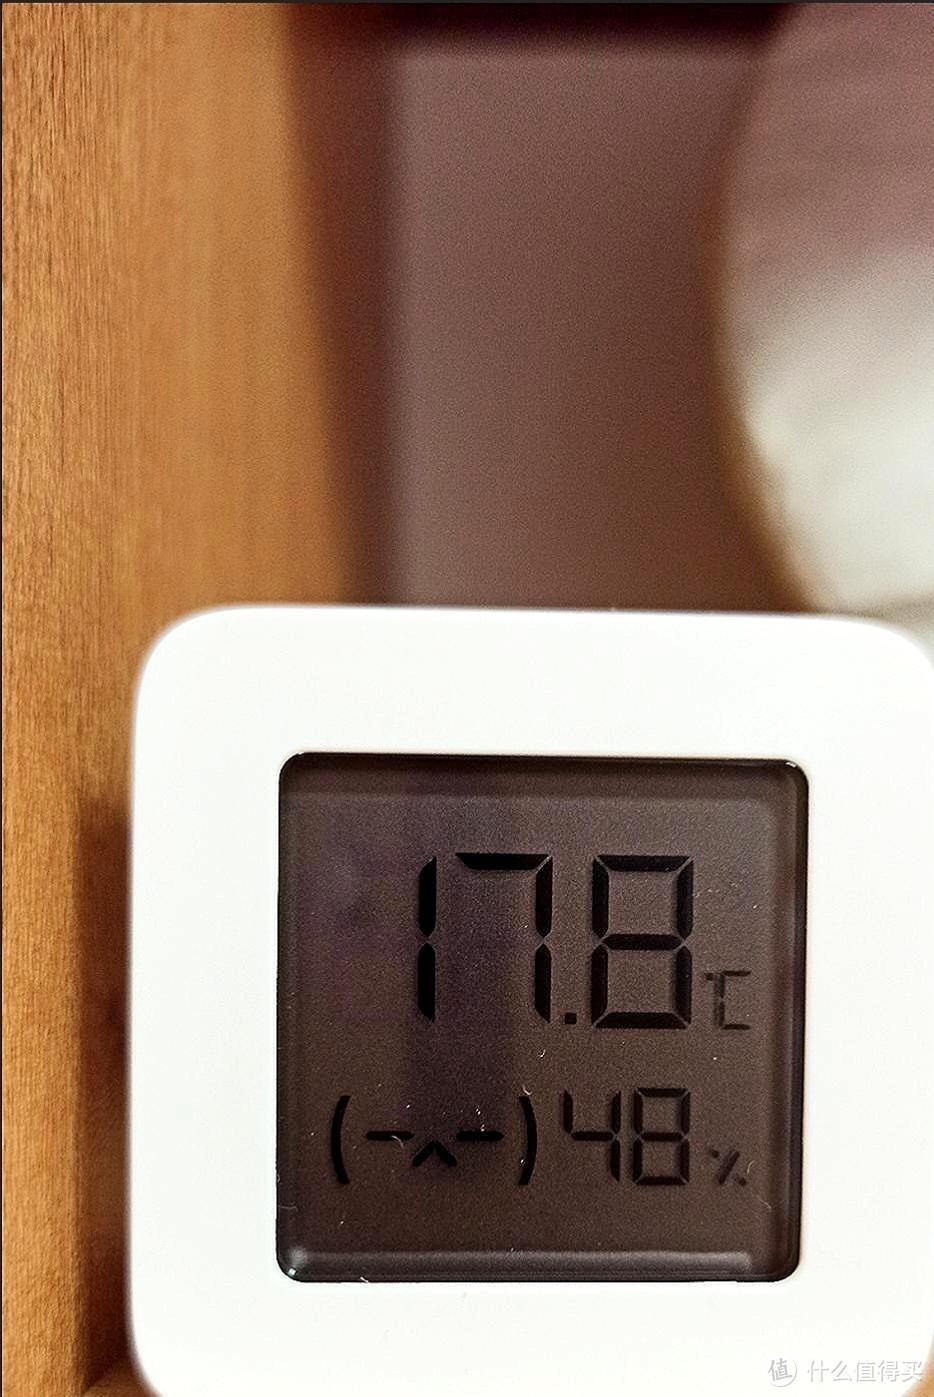 家庭温度湿度表